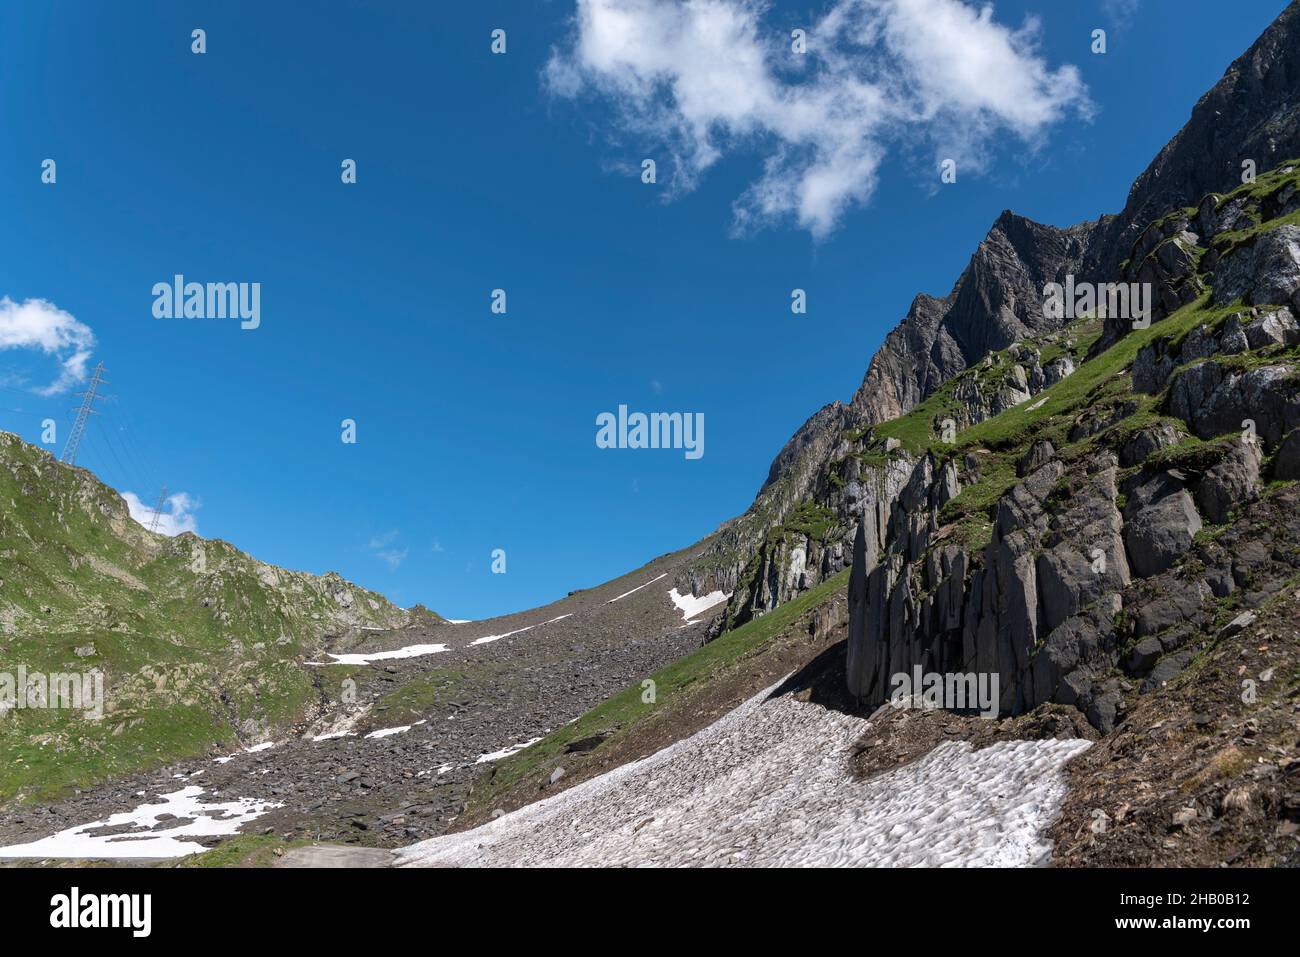 Alpine rocky landscape on the mountain Nufenenstock below the Nufenen Pass, Ulrichen, Valais, Switzerland, Europe Stock Photo